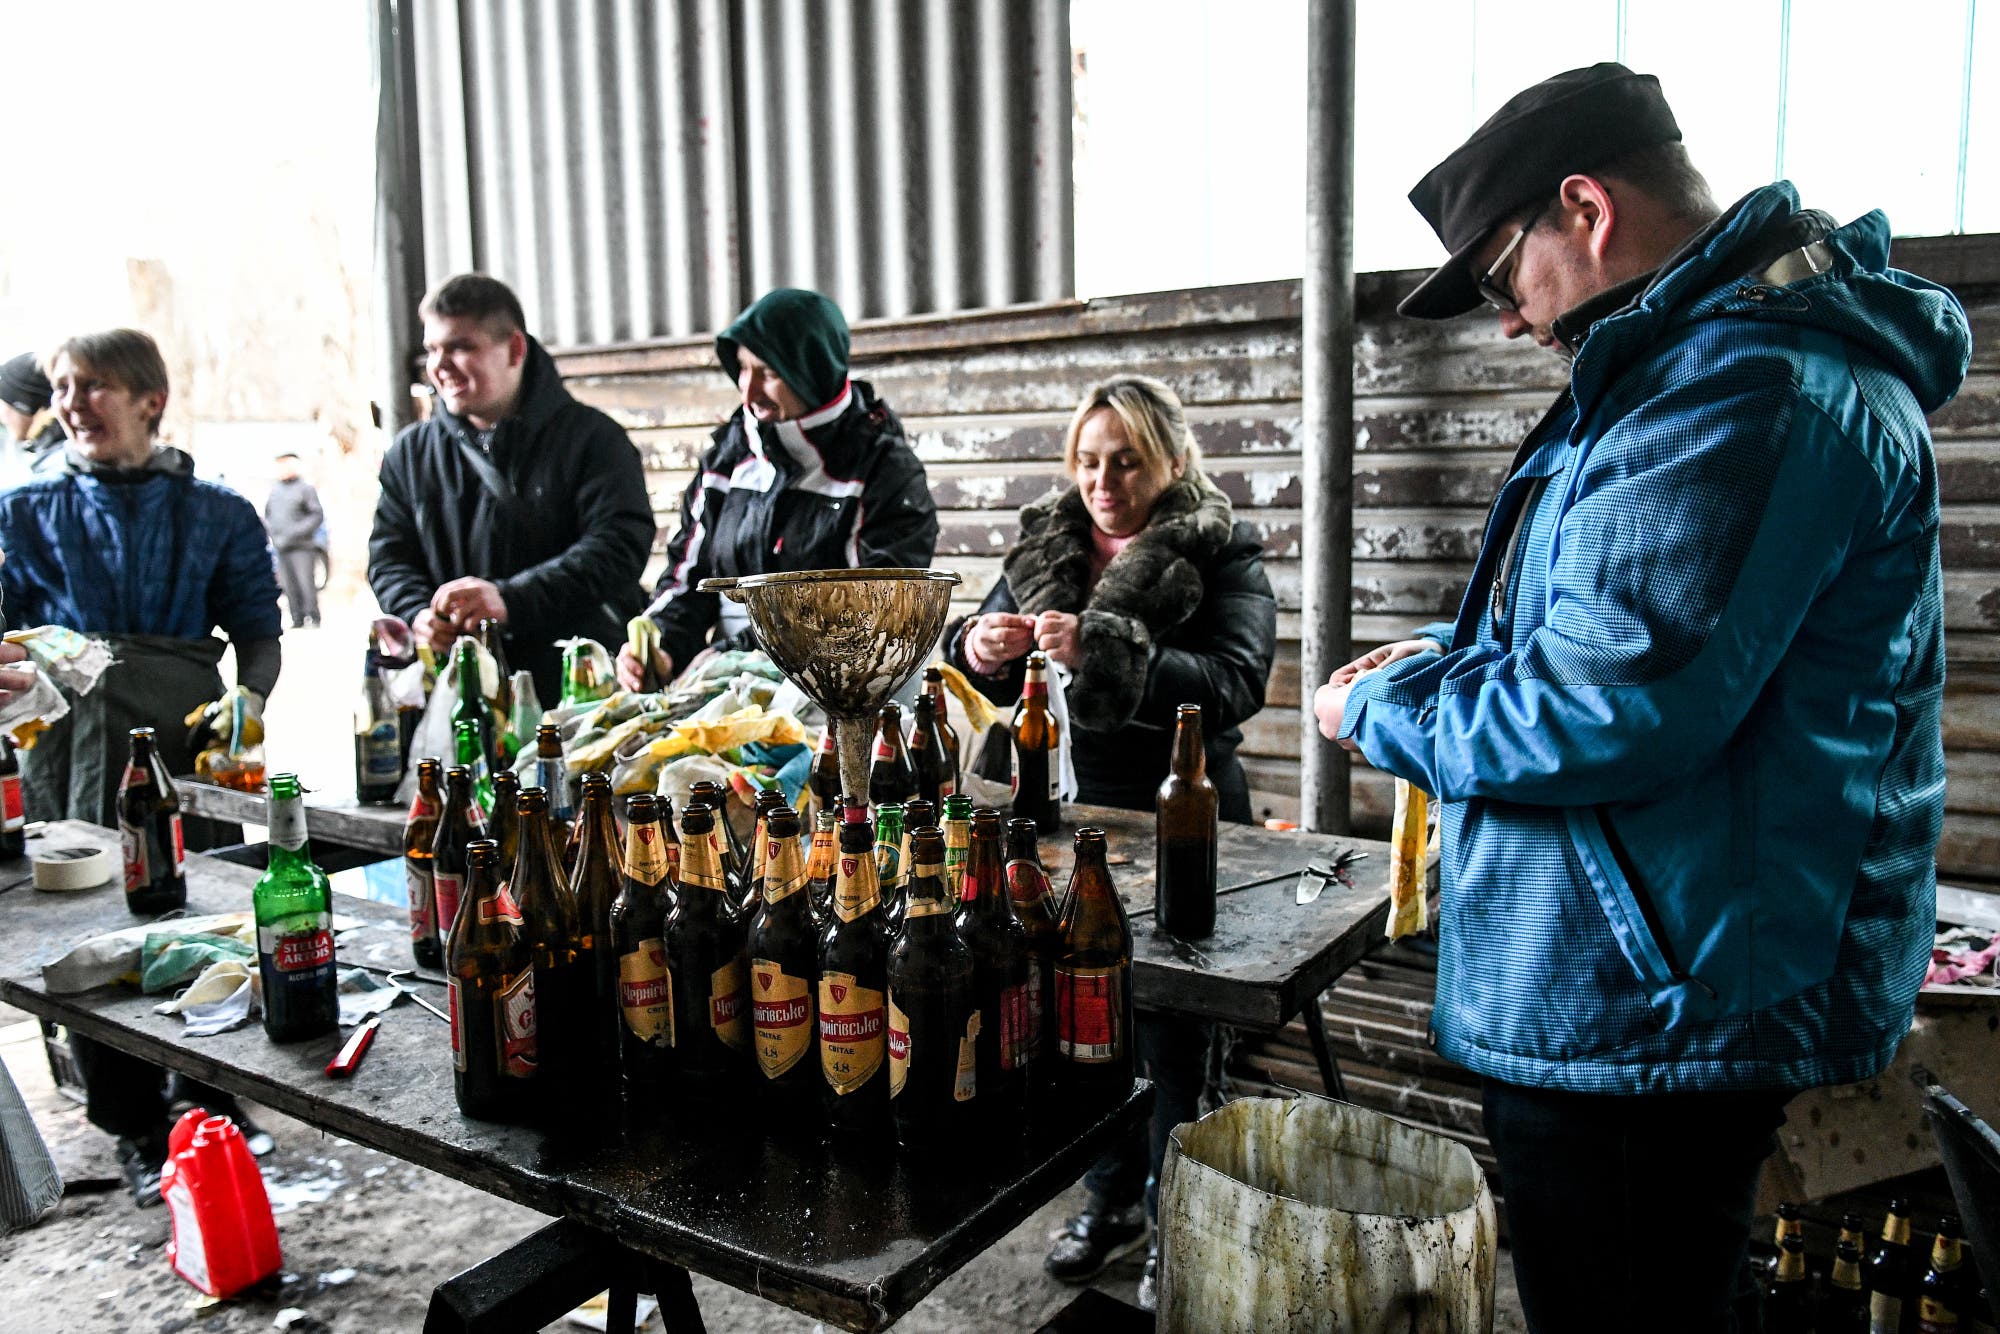 Menschen in dicken Jacken füllen Bierflaschen mit brennbarer Flüssigkeit.